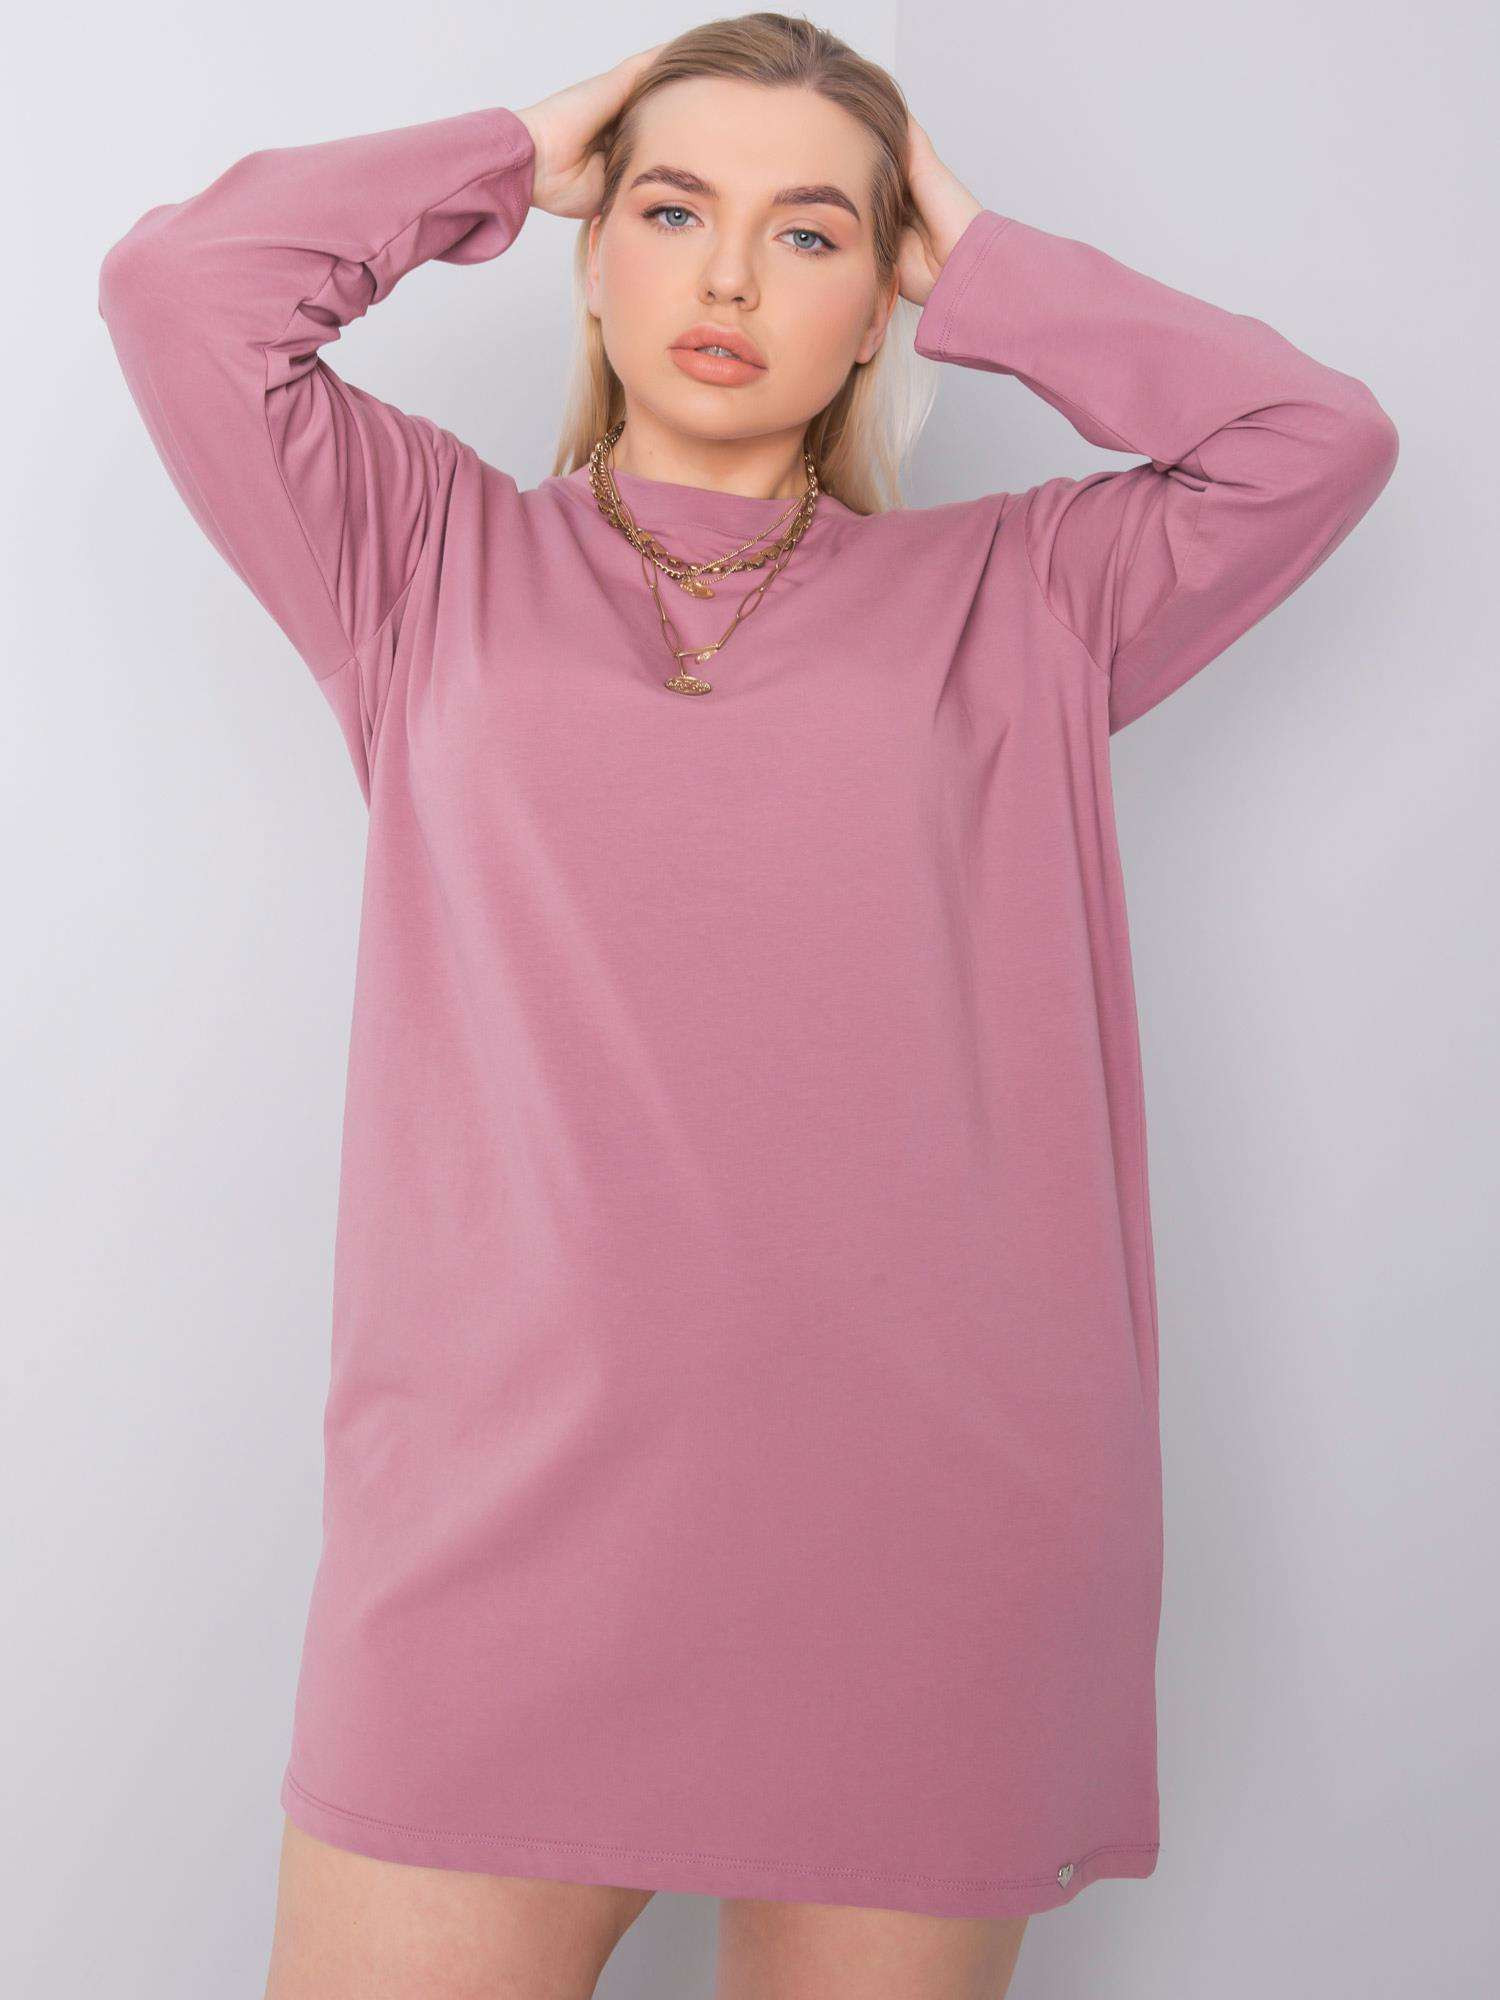 Dusty růžové bavlněné šaty plus velikosti XL